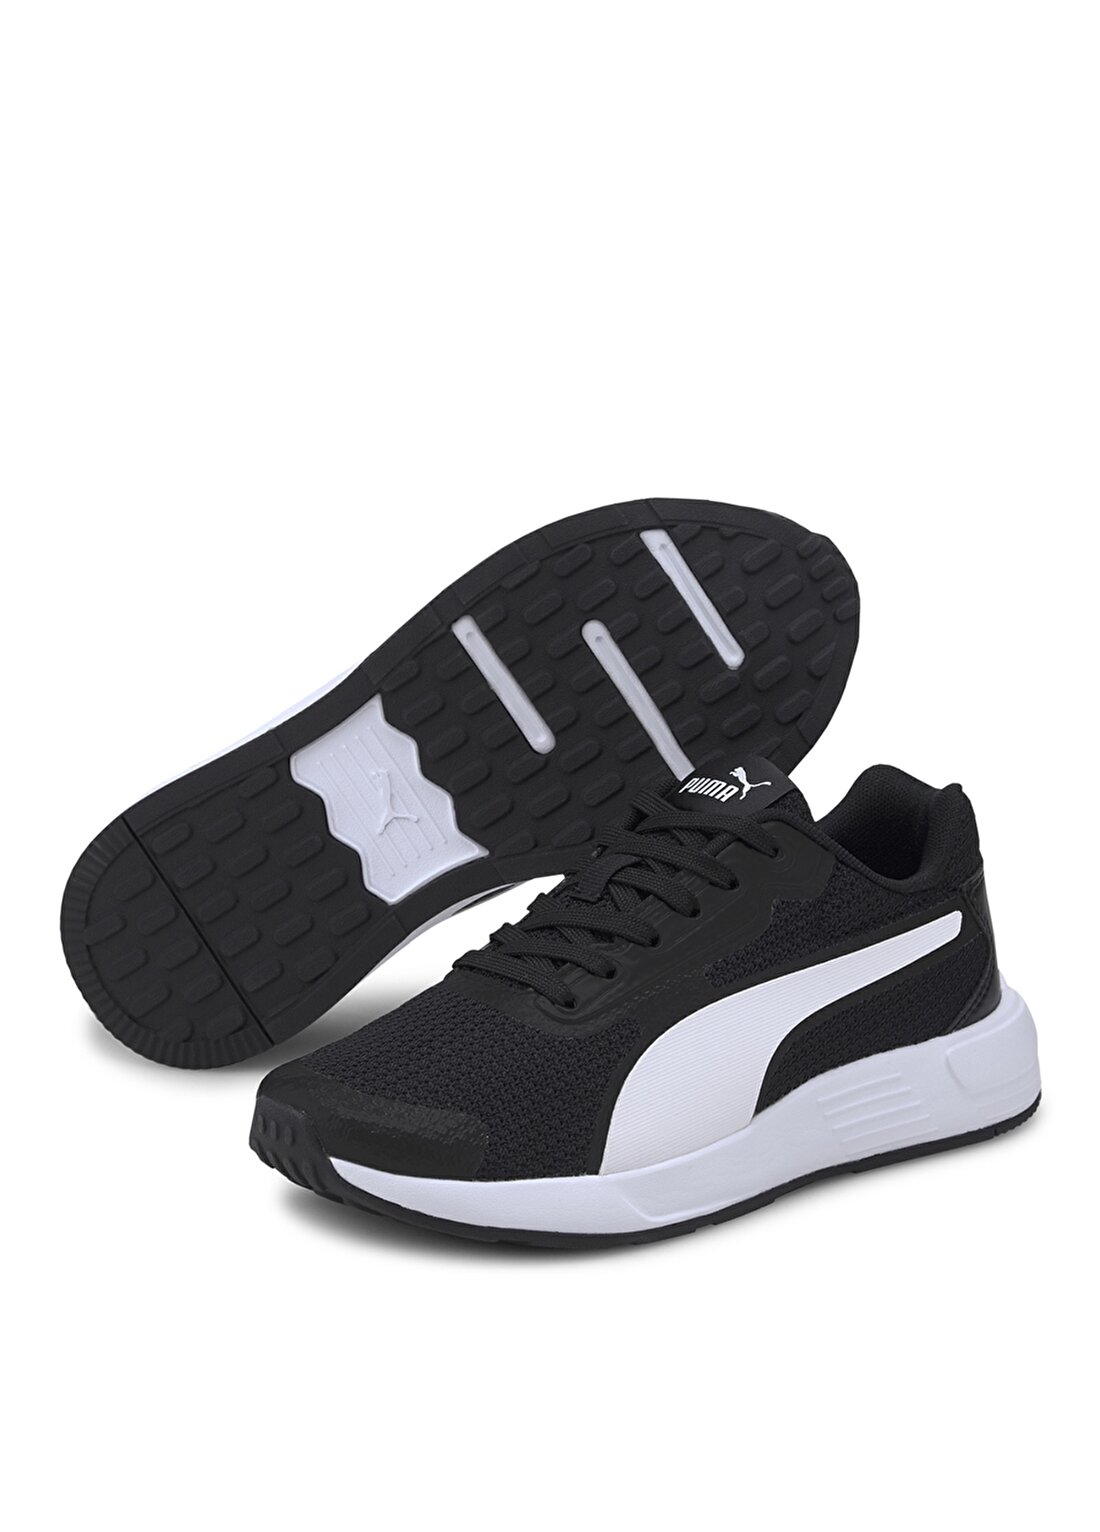 Puma Siyah - Beyaz Erkek Çocuk Yürüyüş Ayakkabısı